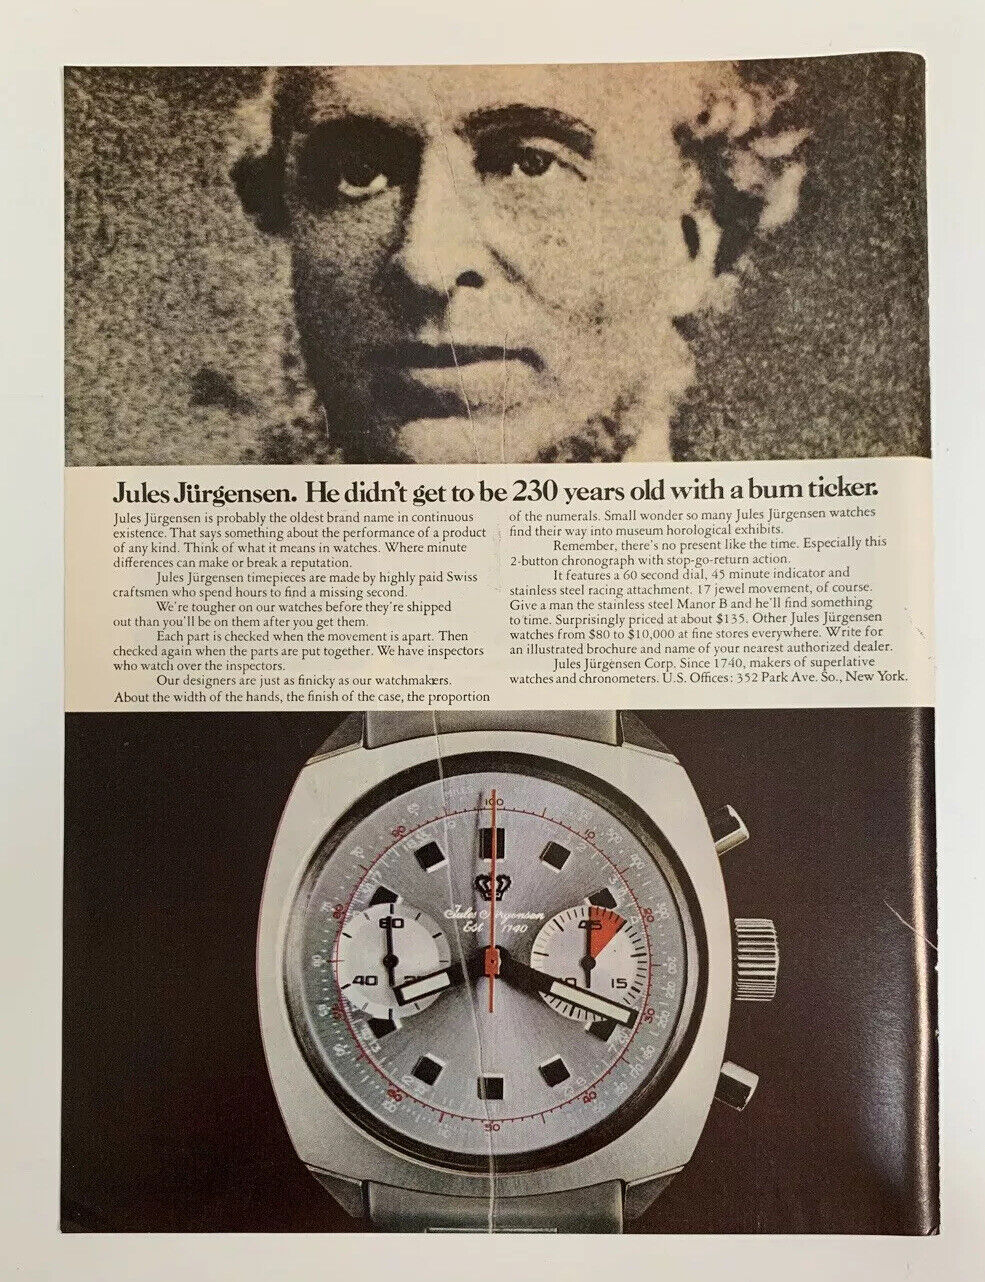 1970 Jules Jurgensen Watch Print Ad Original Vintage Since 1740 Watches